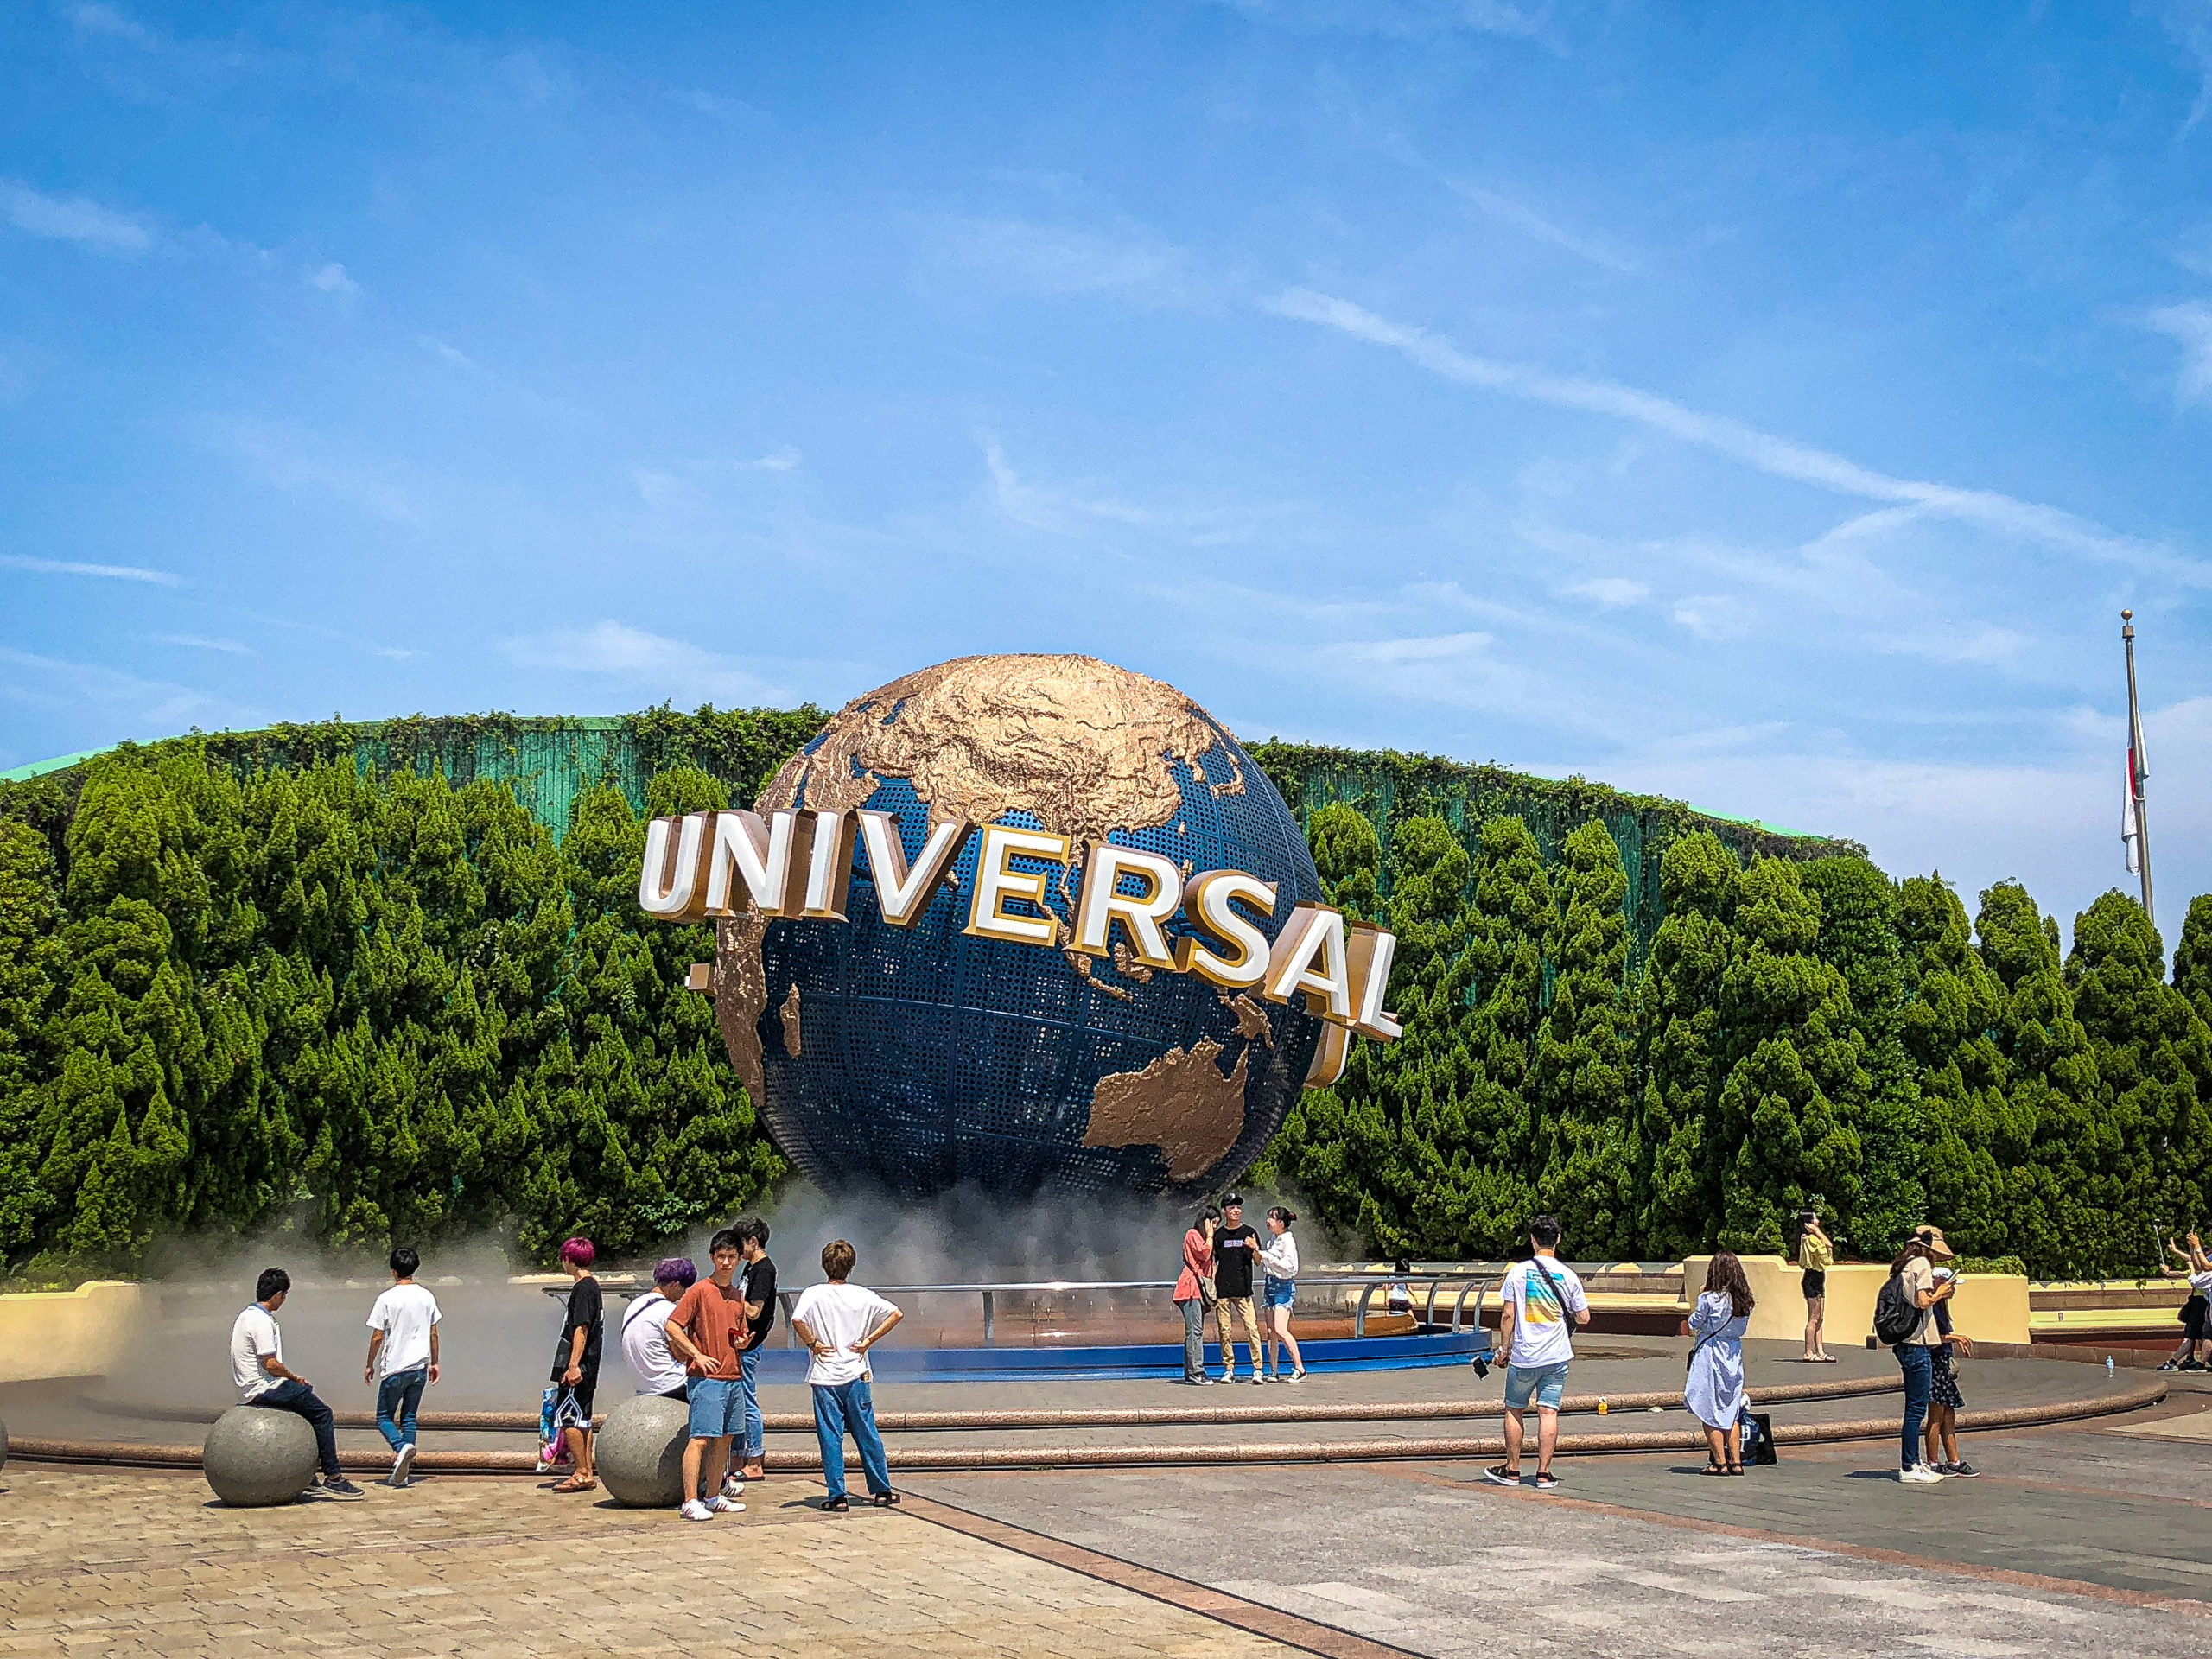 Universal Logo in Universal Osaka in Japan